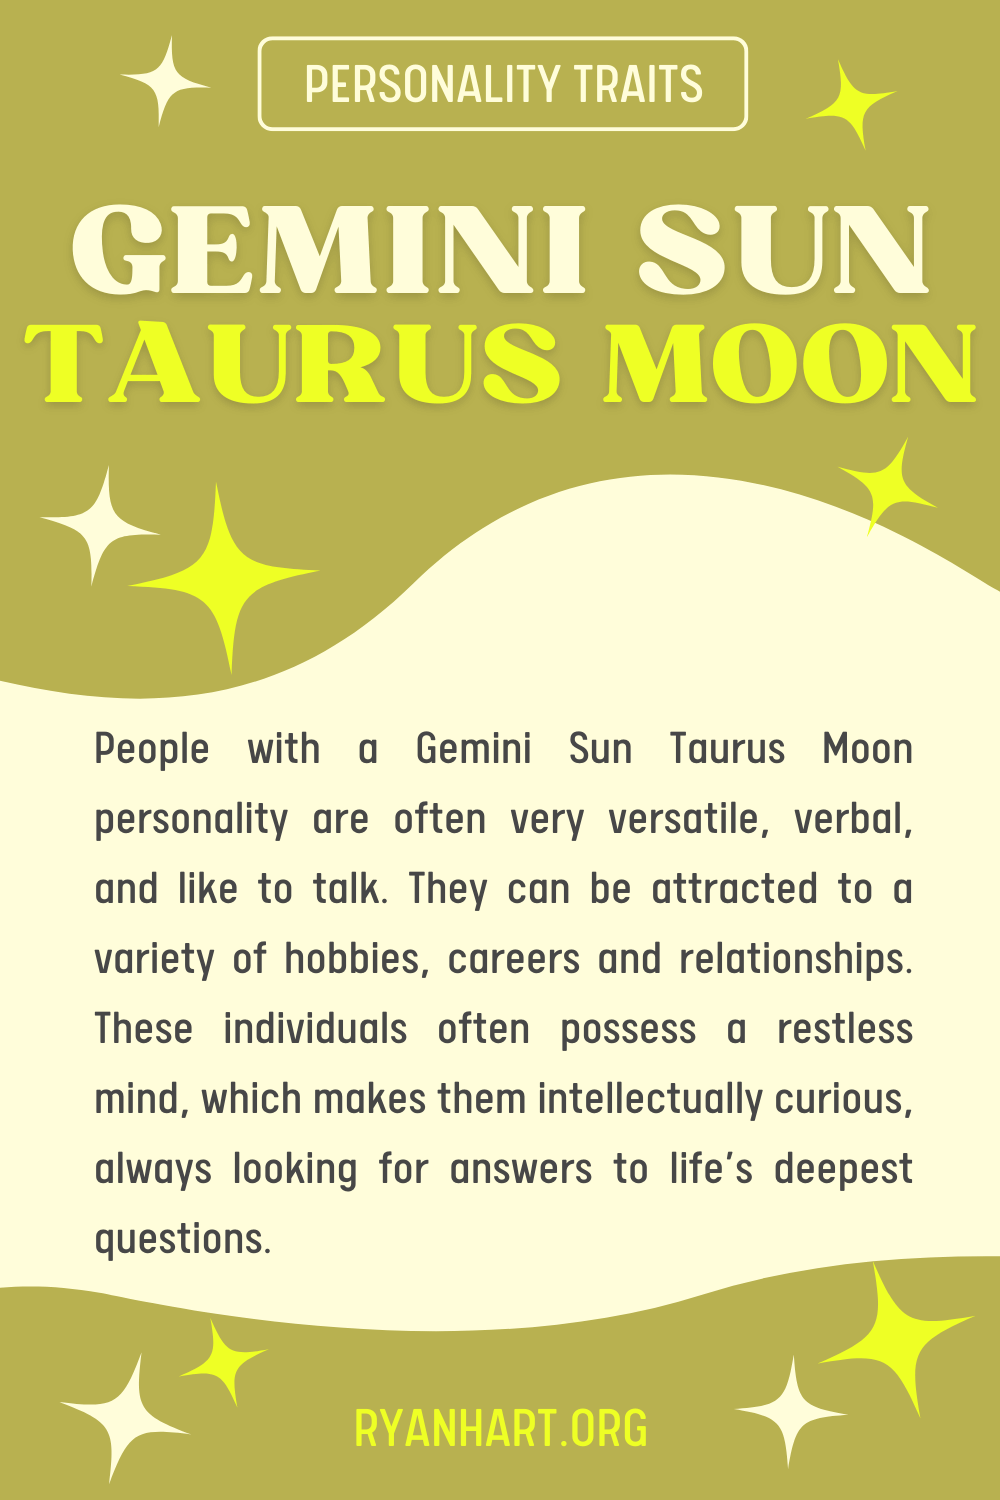  Ciri-ciri Kepribadian Gemini Matahari Taurus Bulan